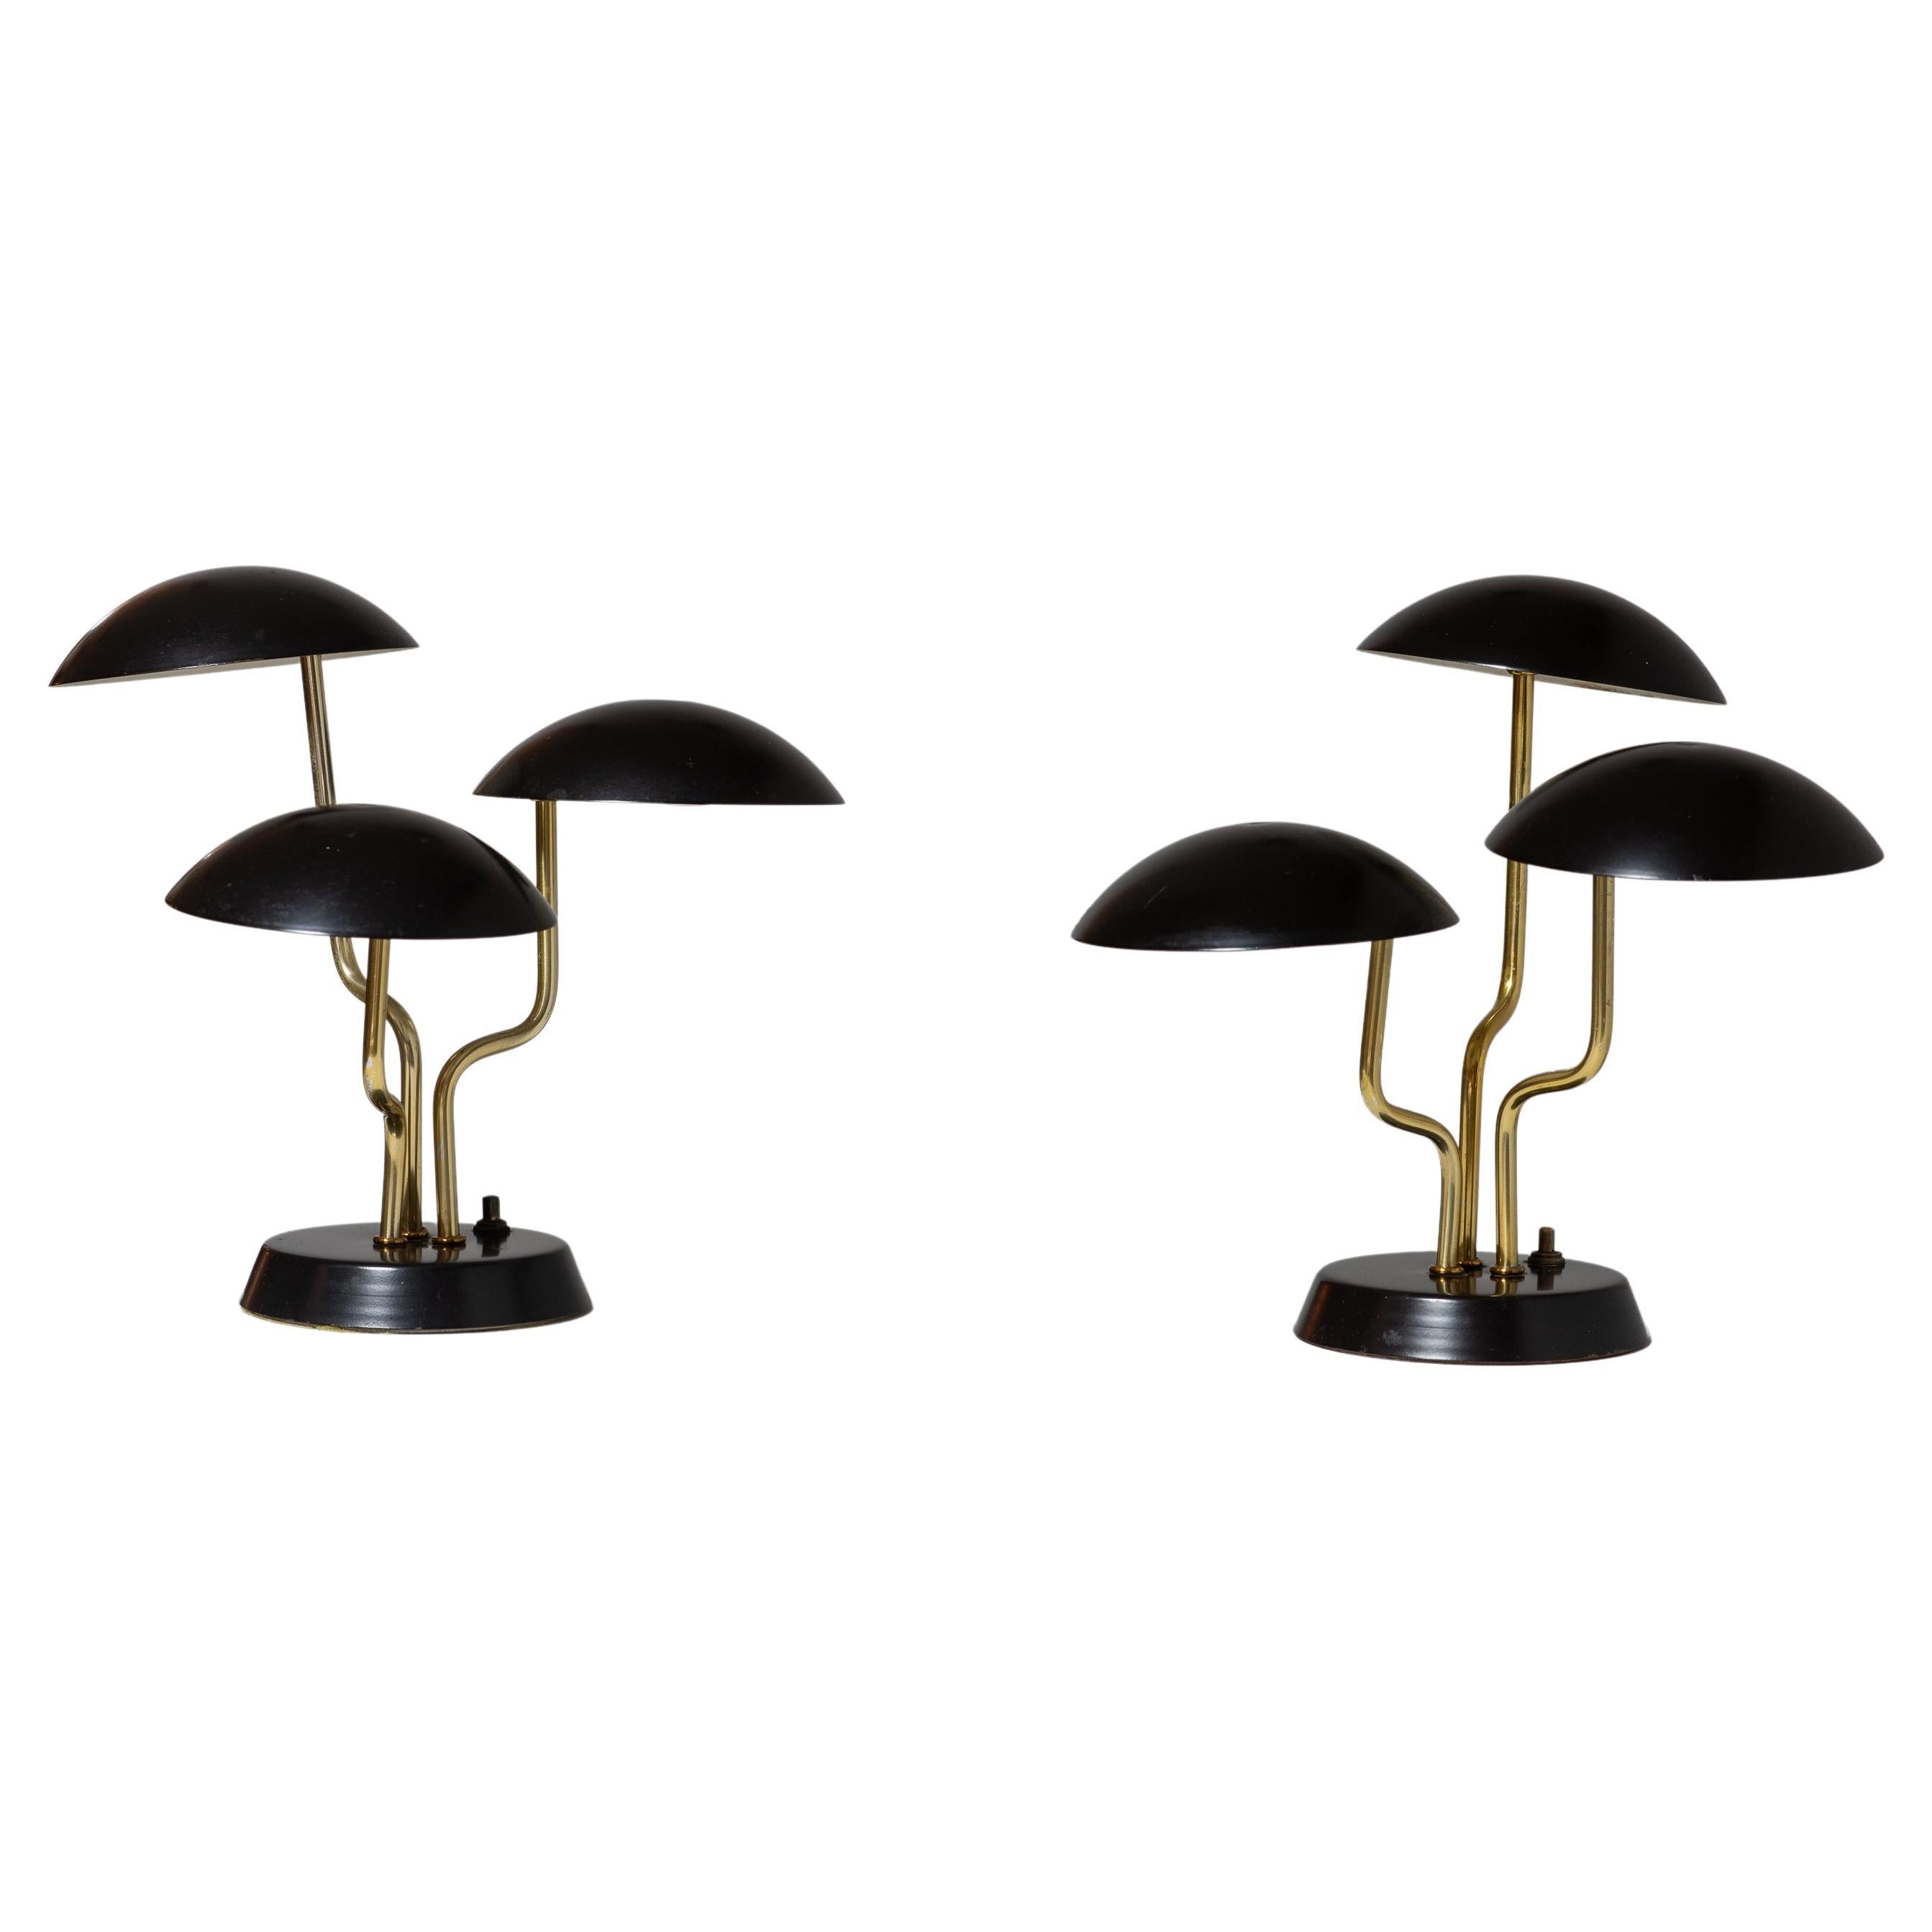 Gino Sarfatti Three Shade Mushroom Lamp in Black and Brass - Pair